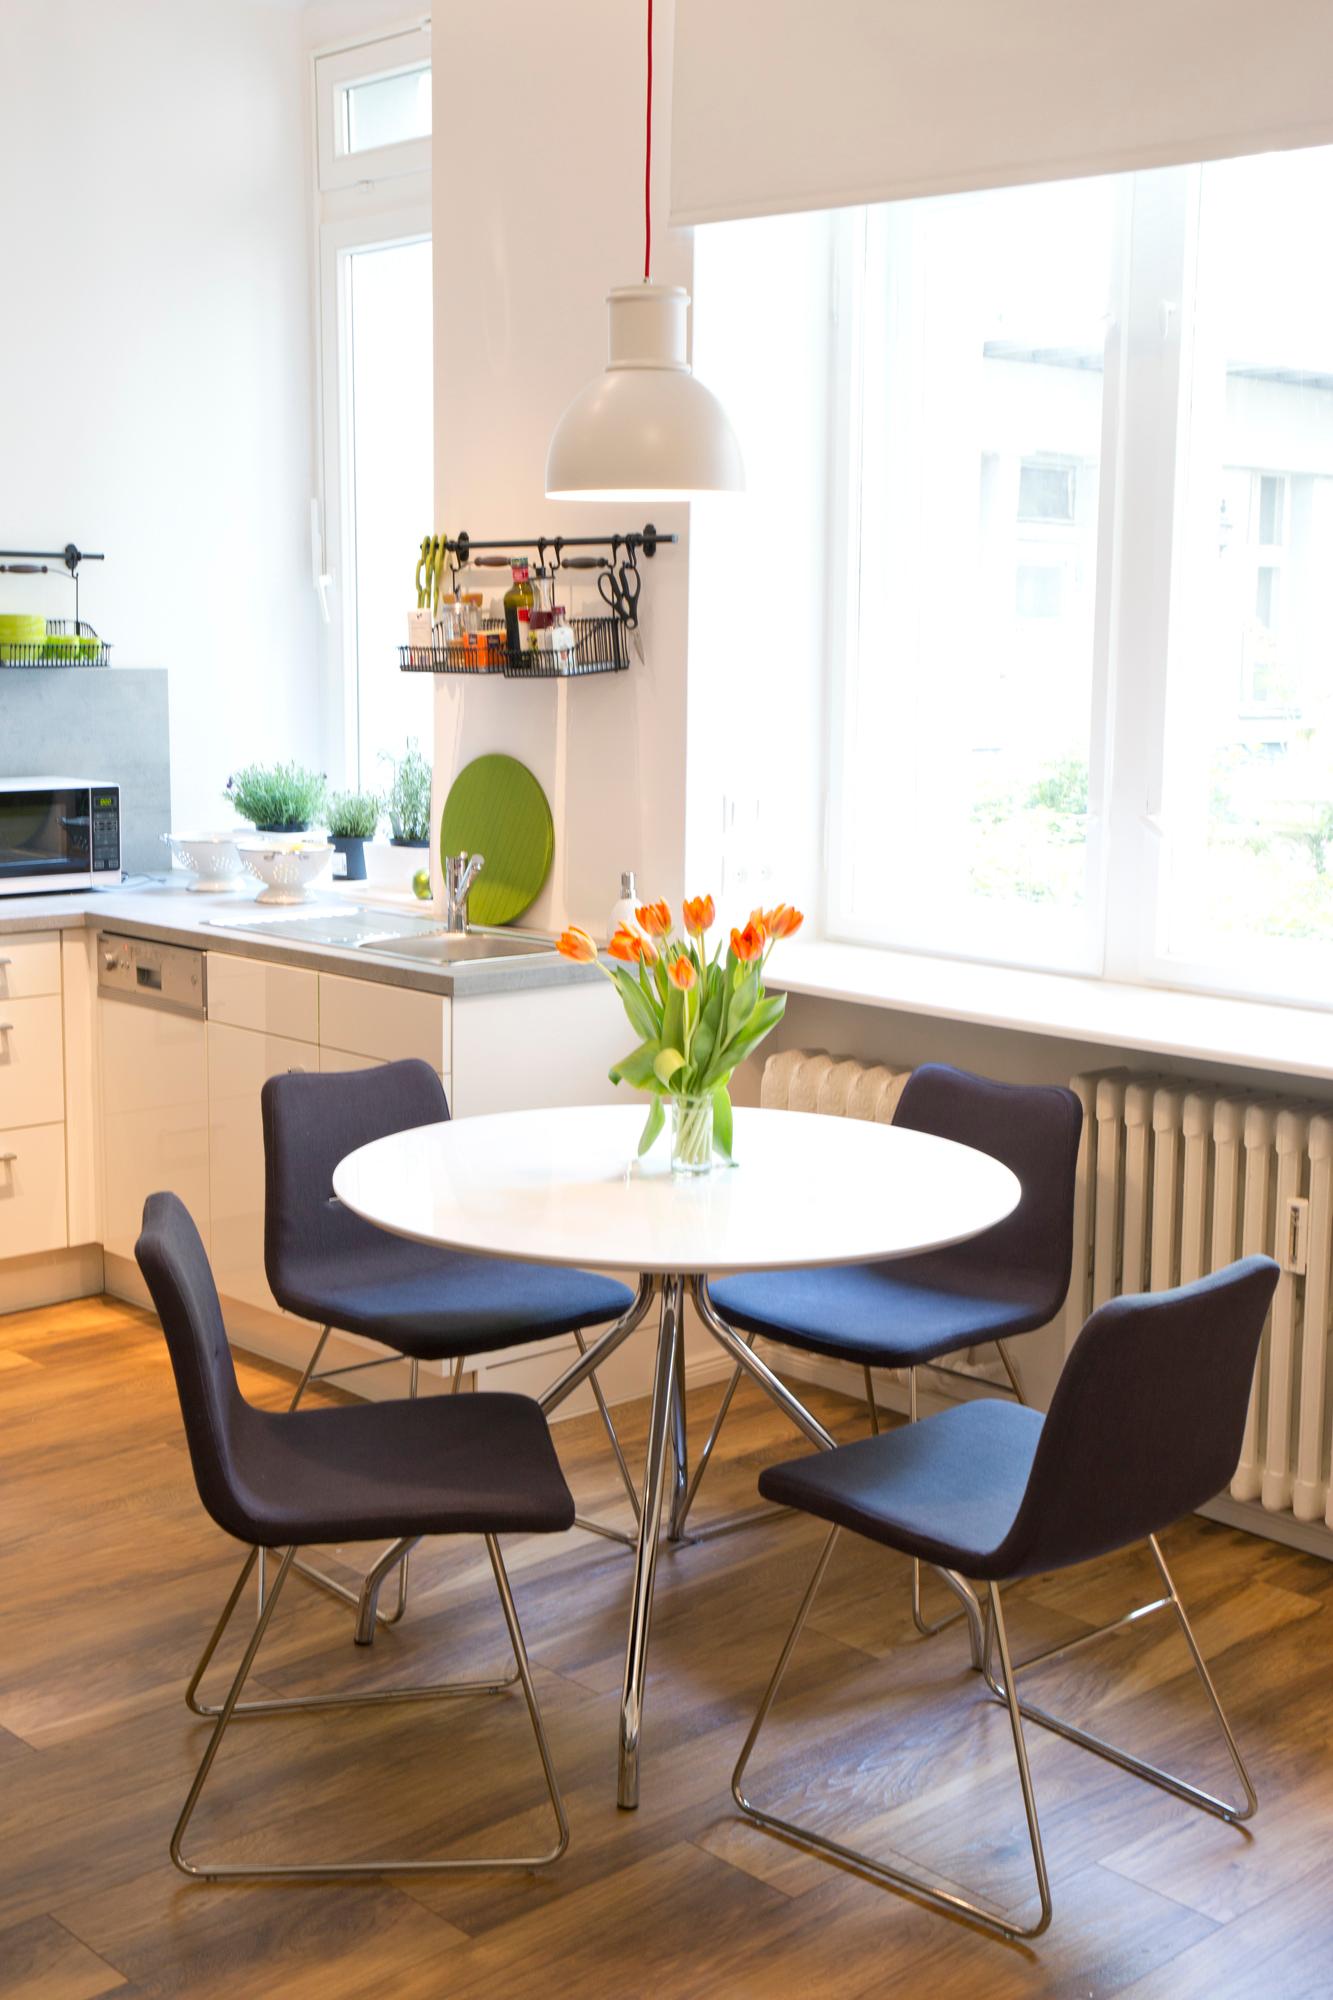 Essen, arbeiten, lesen - alles geht. #runderesstisch #esszimmerstuhl ©Fashion for Home/ Marie-Luise Manzow